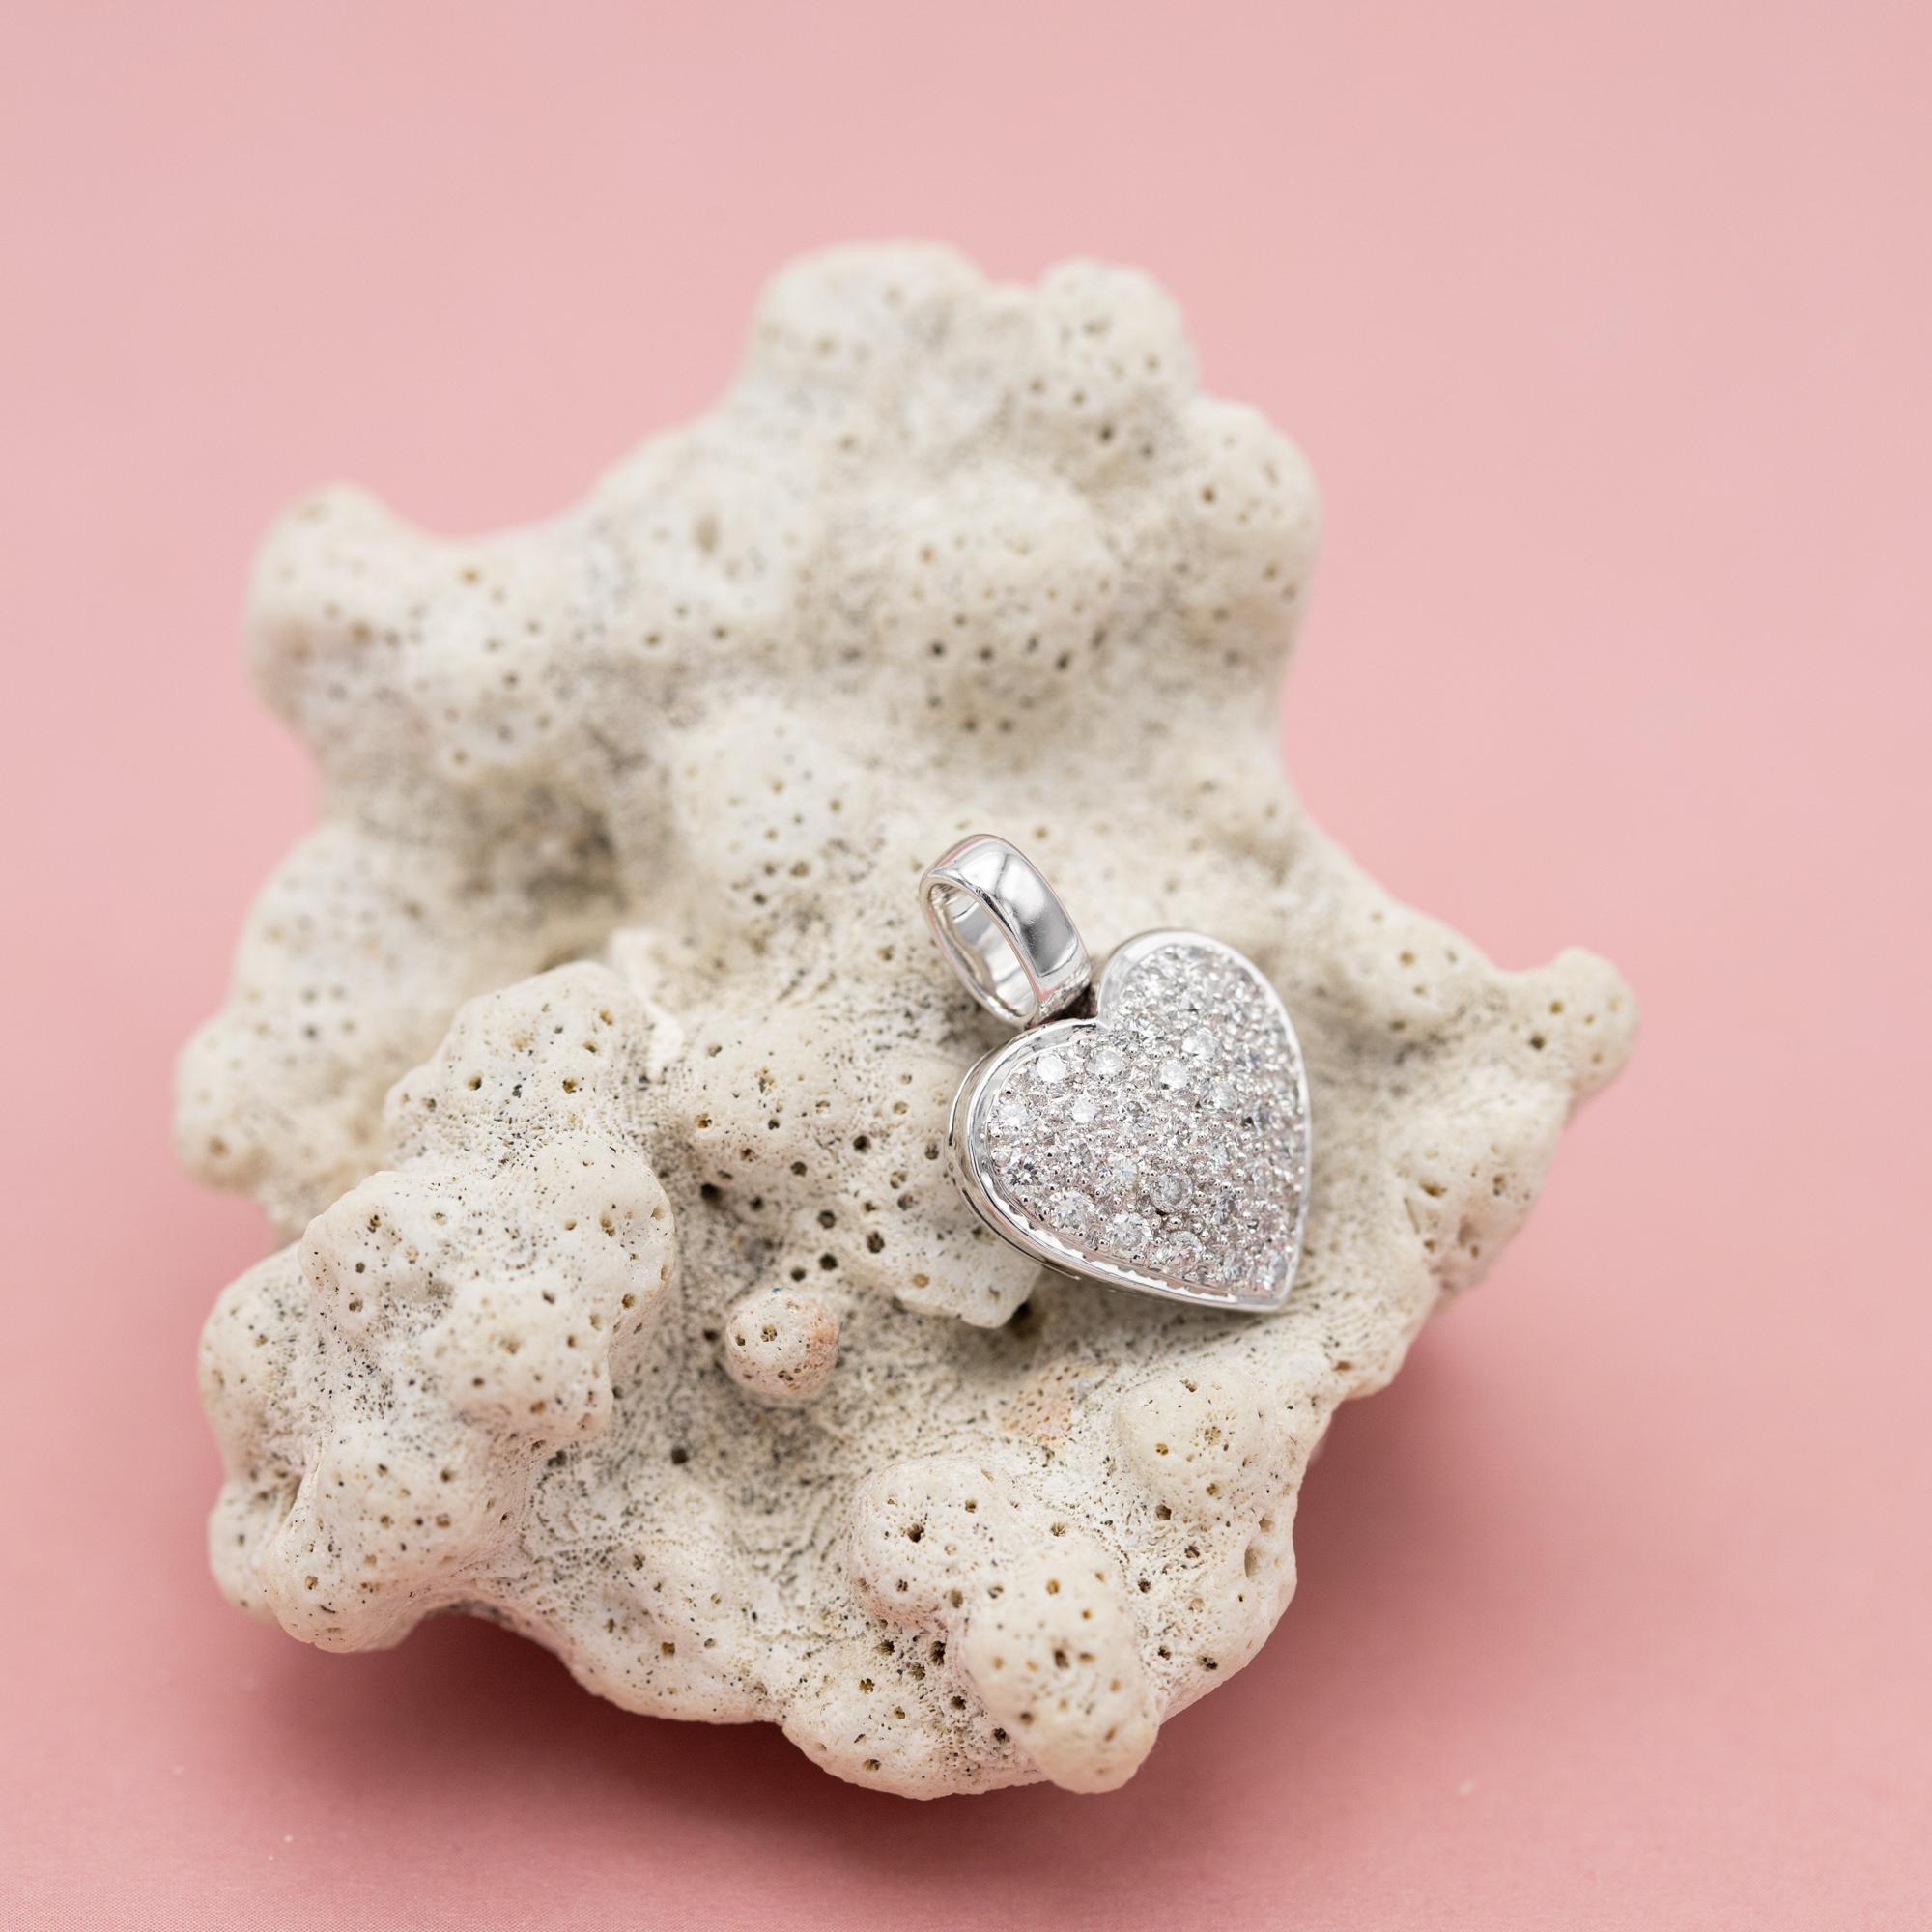 Nous vous proposons à la vente cette breloque d'amour élégante et scintillante. Cette breloque en diamant représente un magnifique cœur recouvert de 34 diamants taille unique étincelants. Ces diamants représentent environ 0,51 ct. Ce médaillon